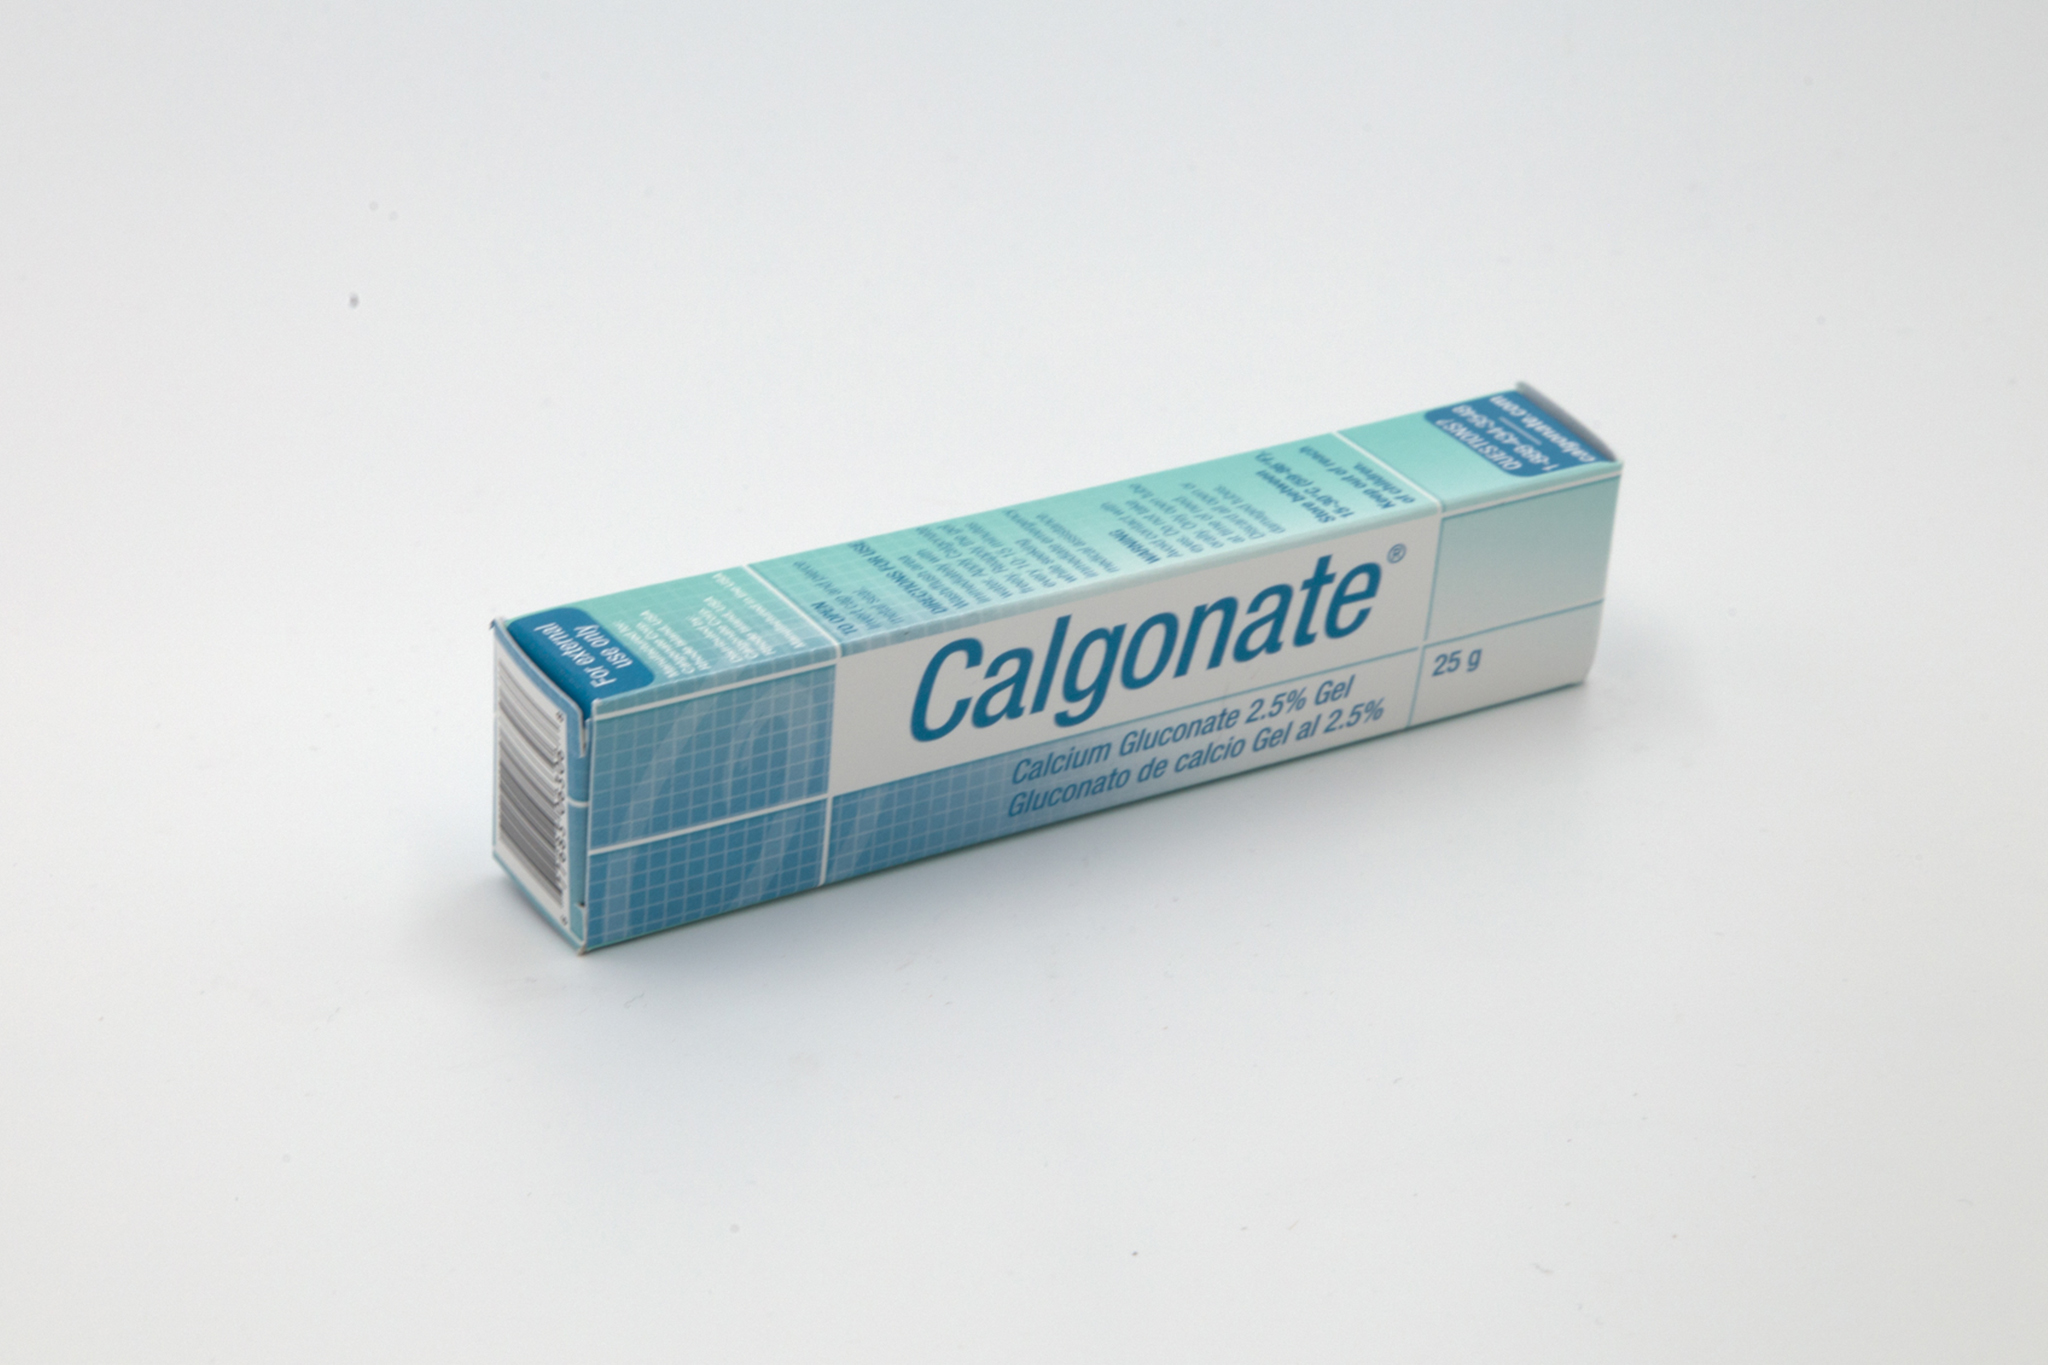 Small bottle of calcium gluconate